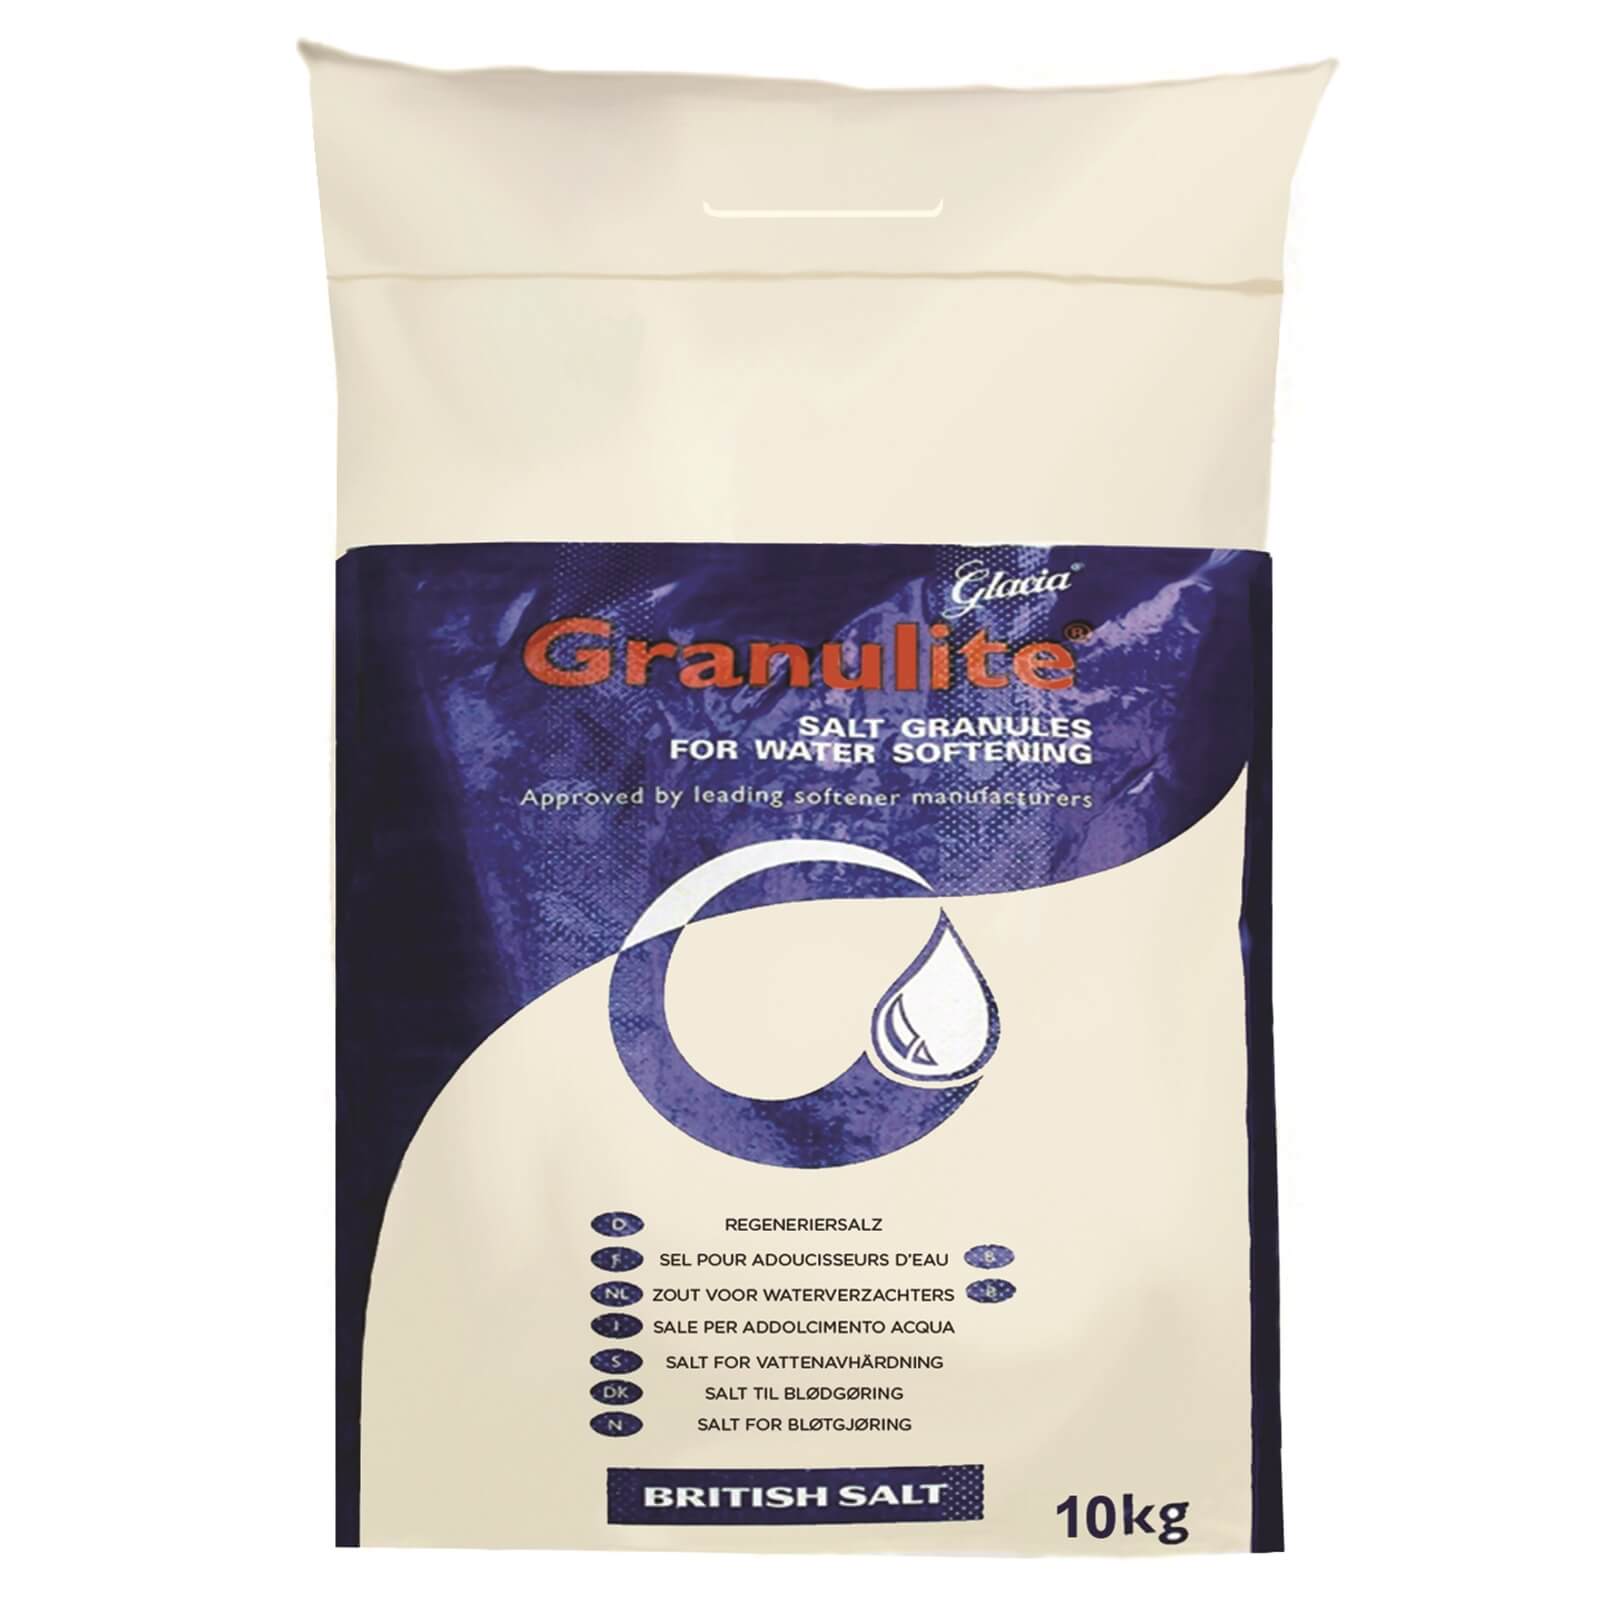 10kg granular salt